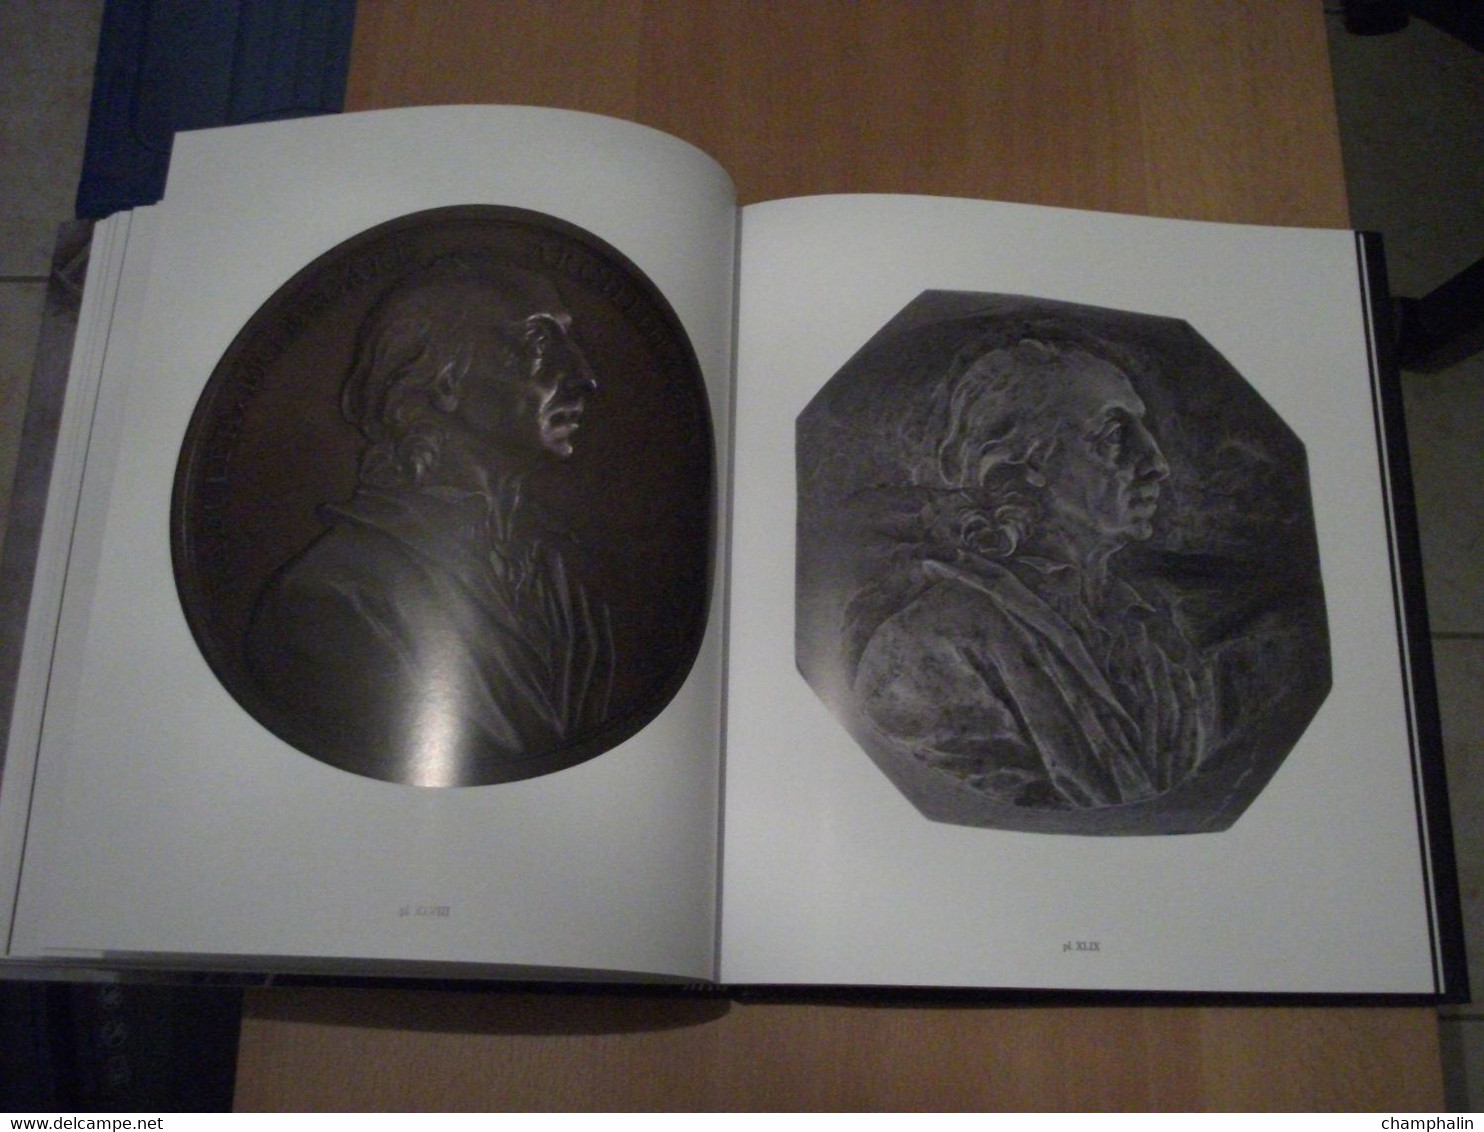 Images chatoyantes du Siècle des Lumières - Les Médailles des Dassier de Genève - W. Eisler - Editions Skira